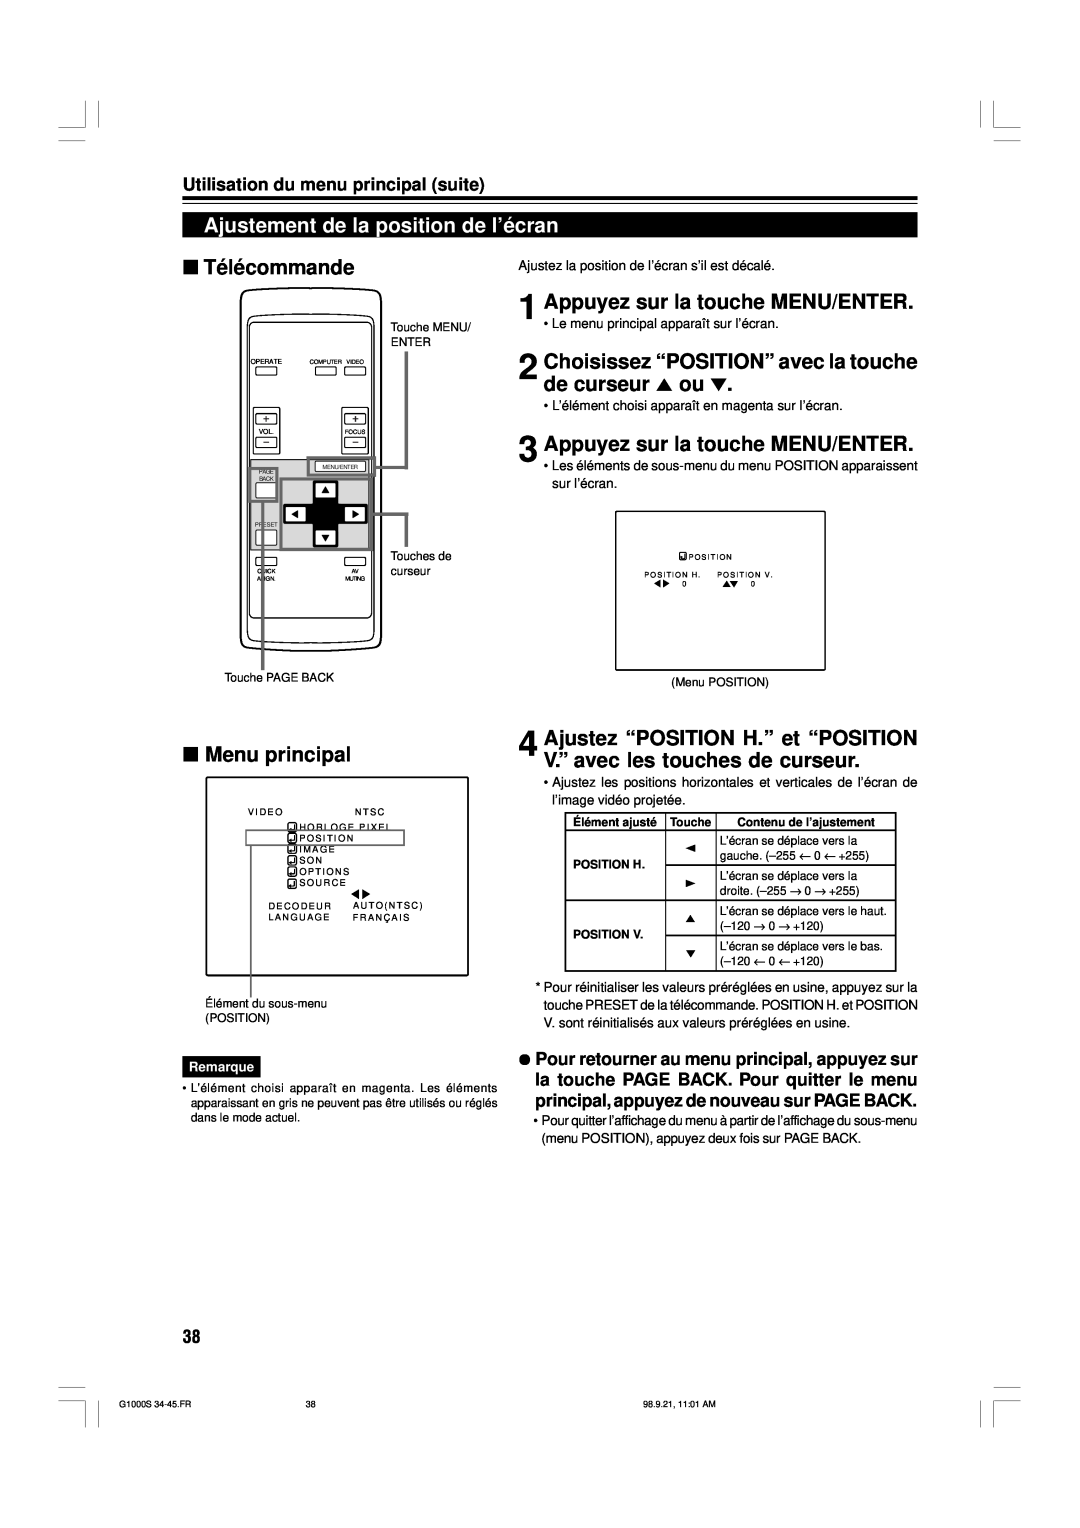 JVC G1000S manual Ajustement de la position de l’écran, Choisissez “POSITION” avec la touche de curseur 5 ou, Télécommande 